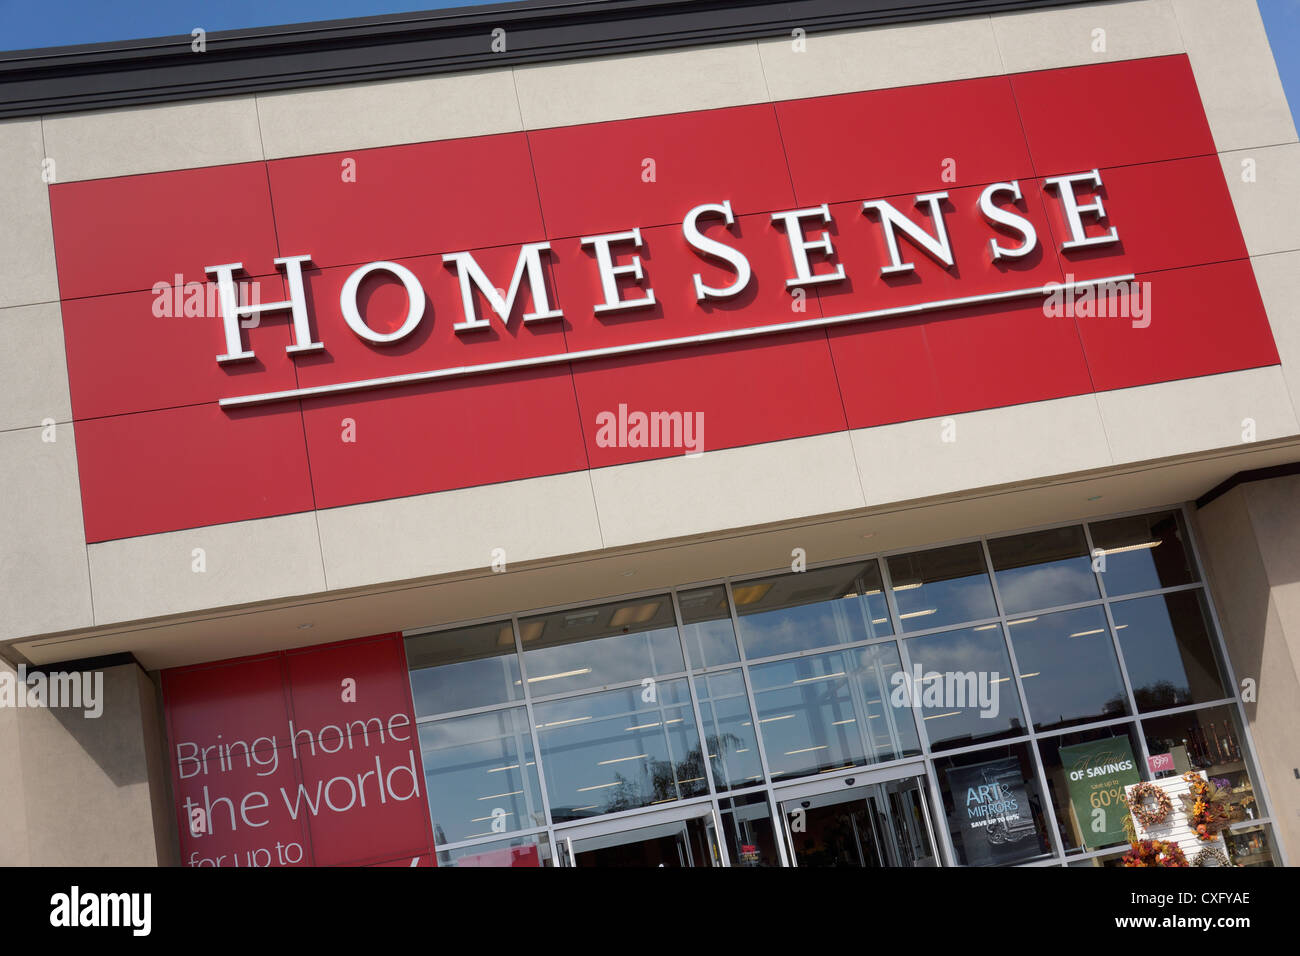 HomeSense, home furnishing store Stock Photo